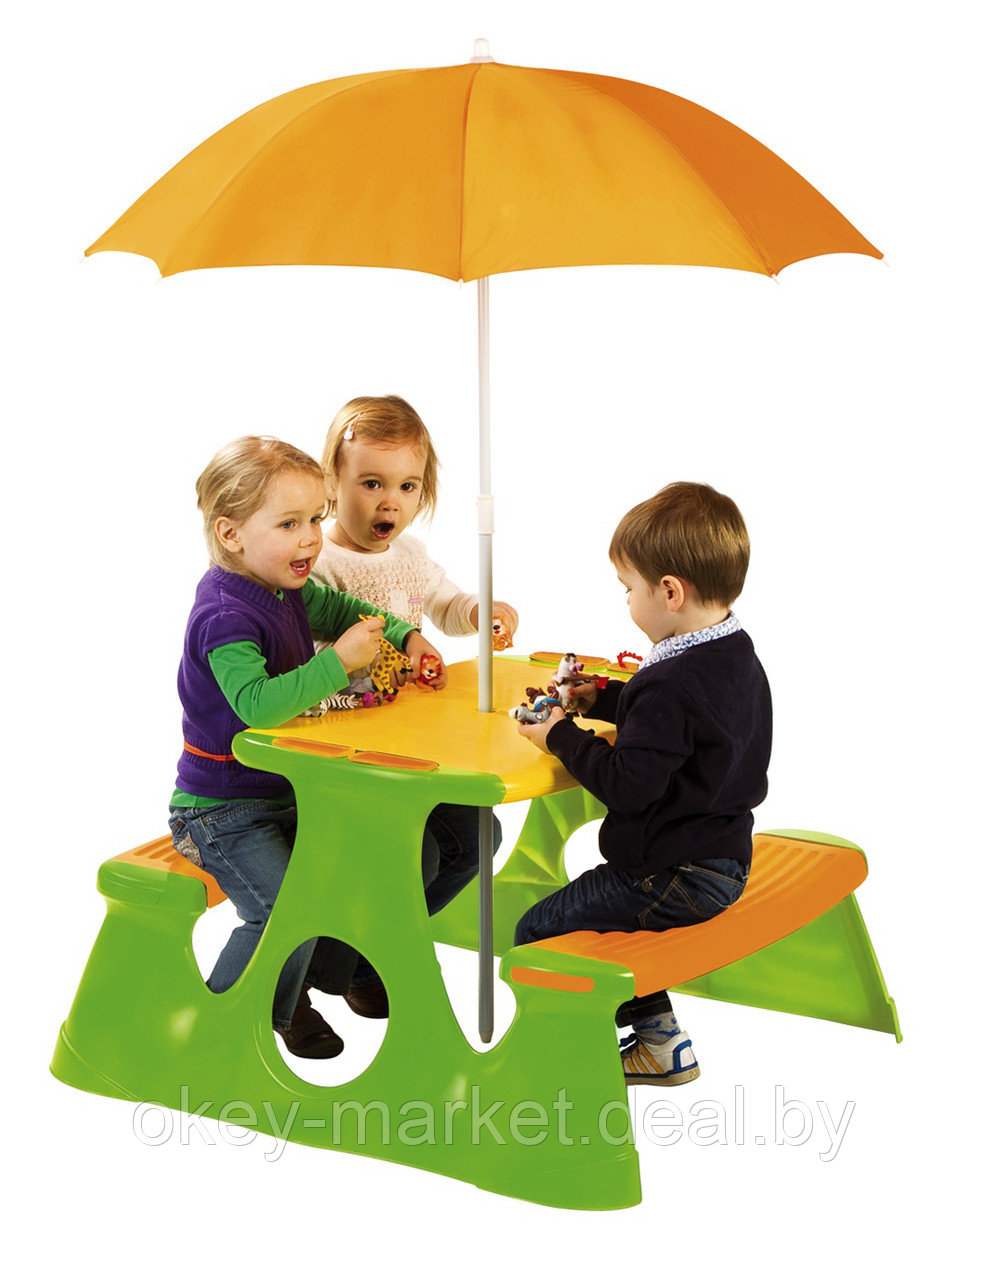 Детский стол для пикника c зонтом PARADISO